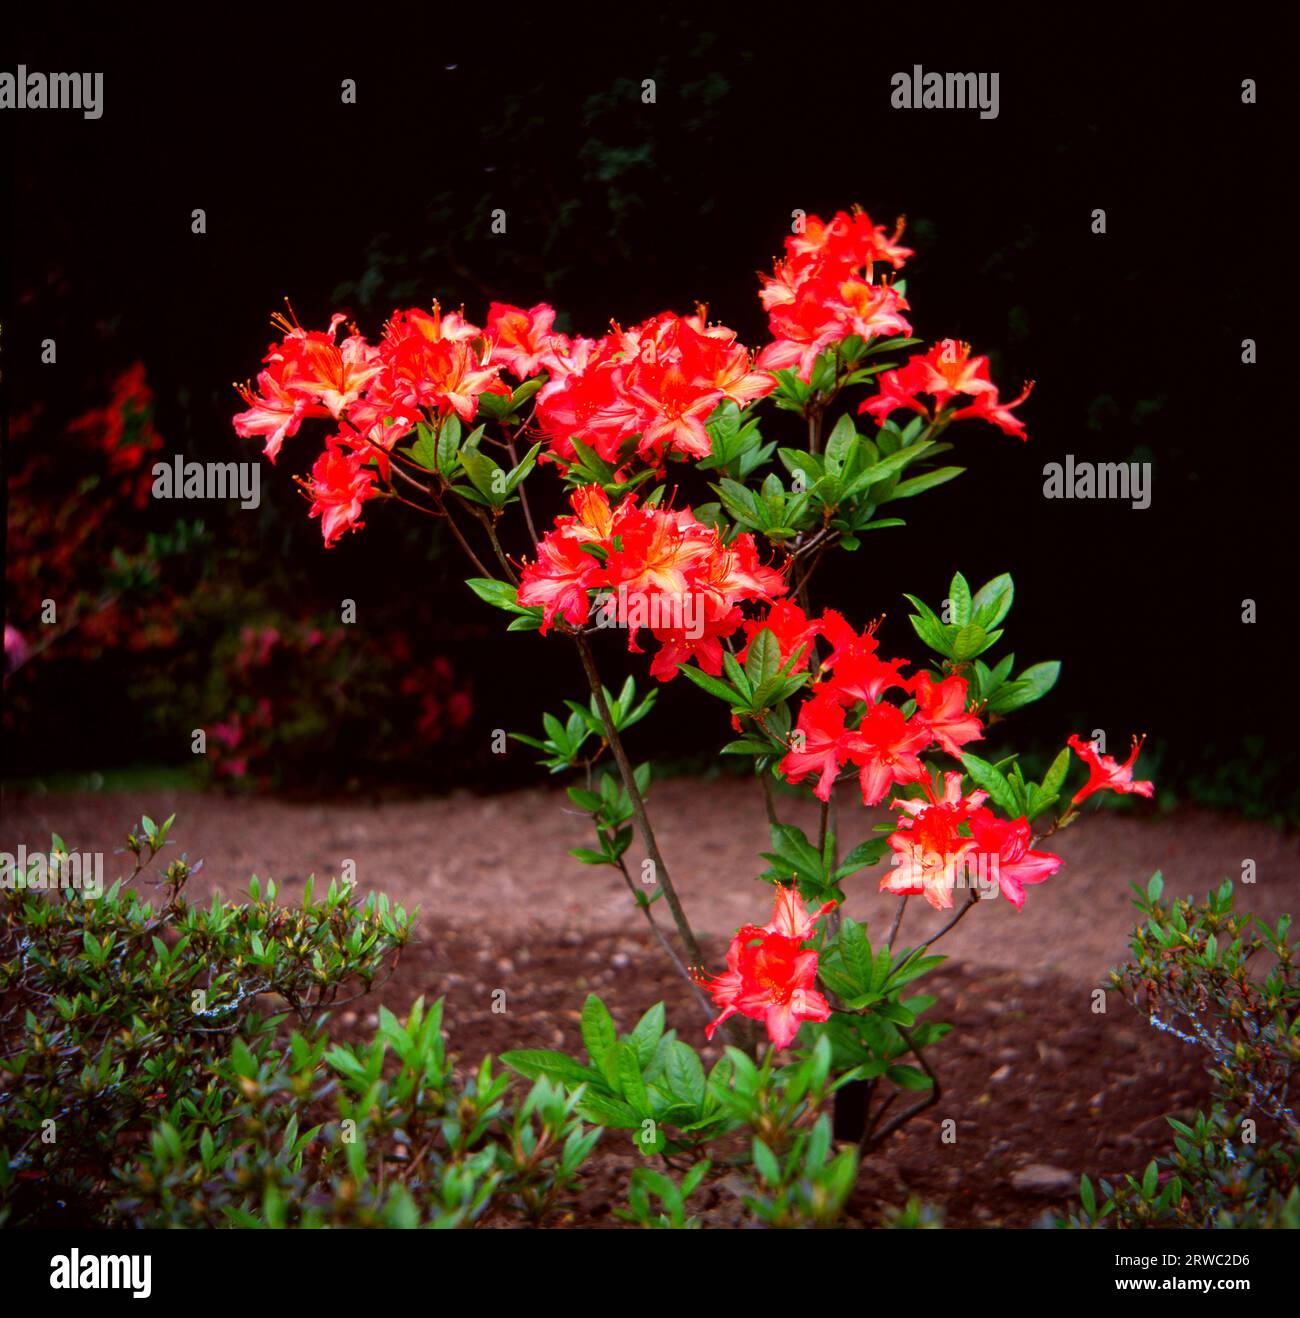 Rhododendron VENETIA fleurissant sur un fond sombre Banque D'Images